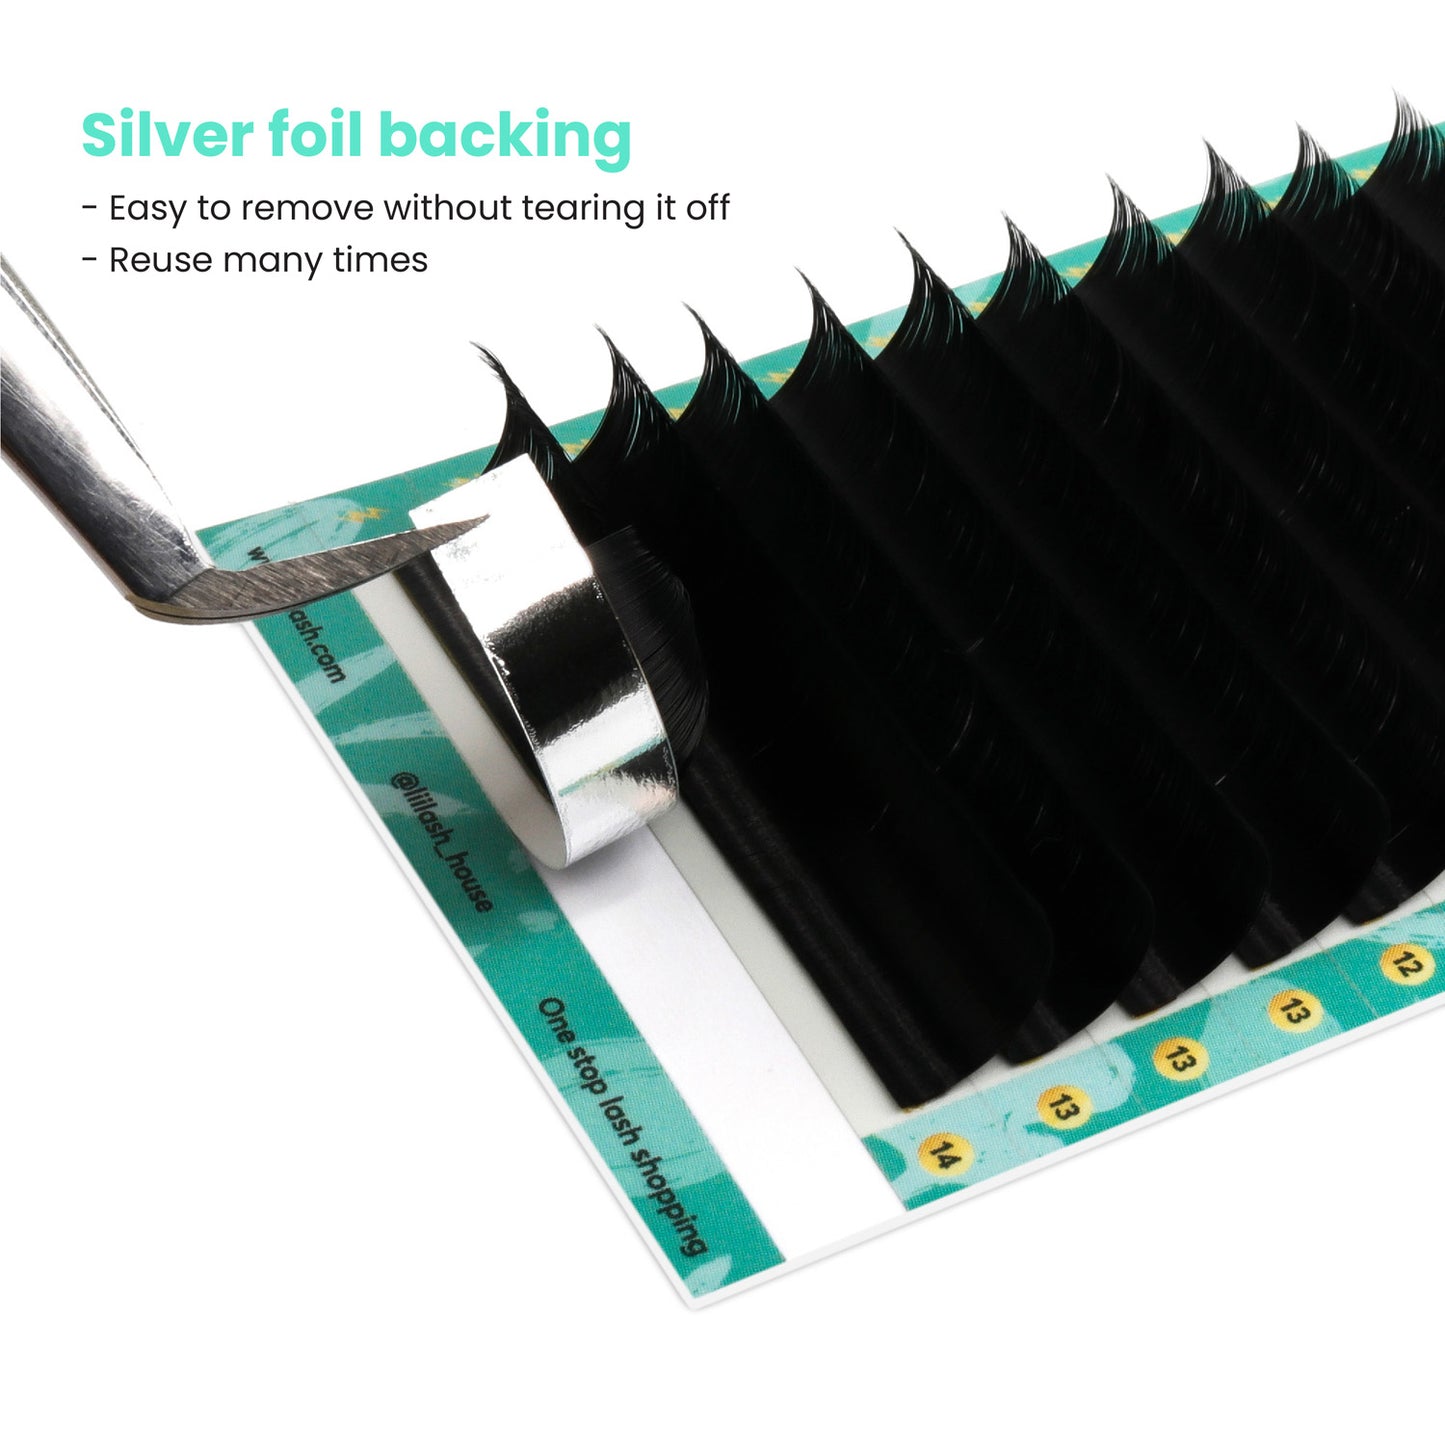 Super-Mink-volume-lashes-0.07mm-Silver-foil-backing